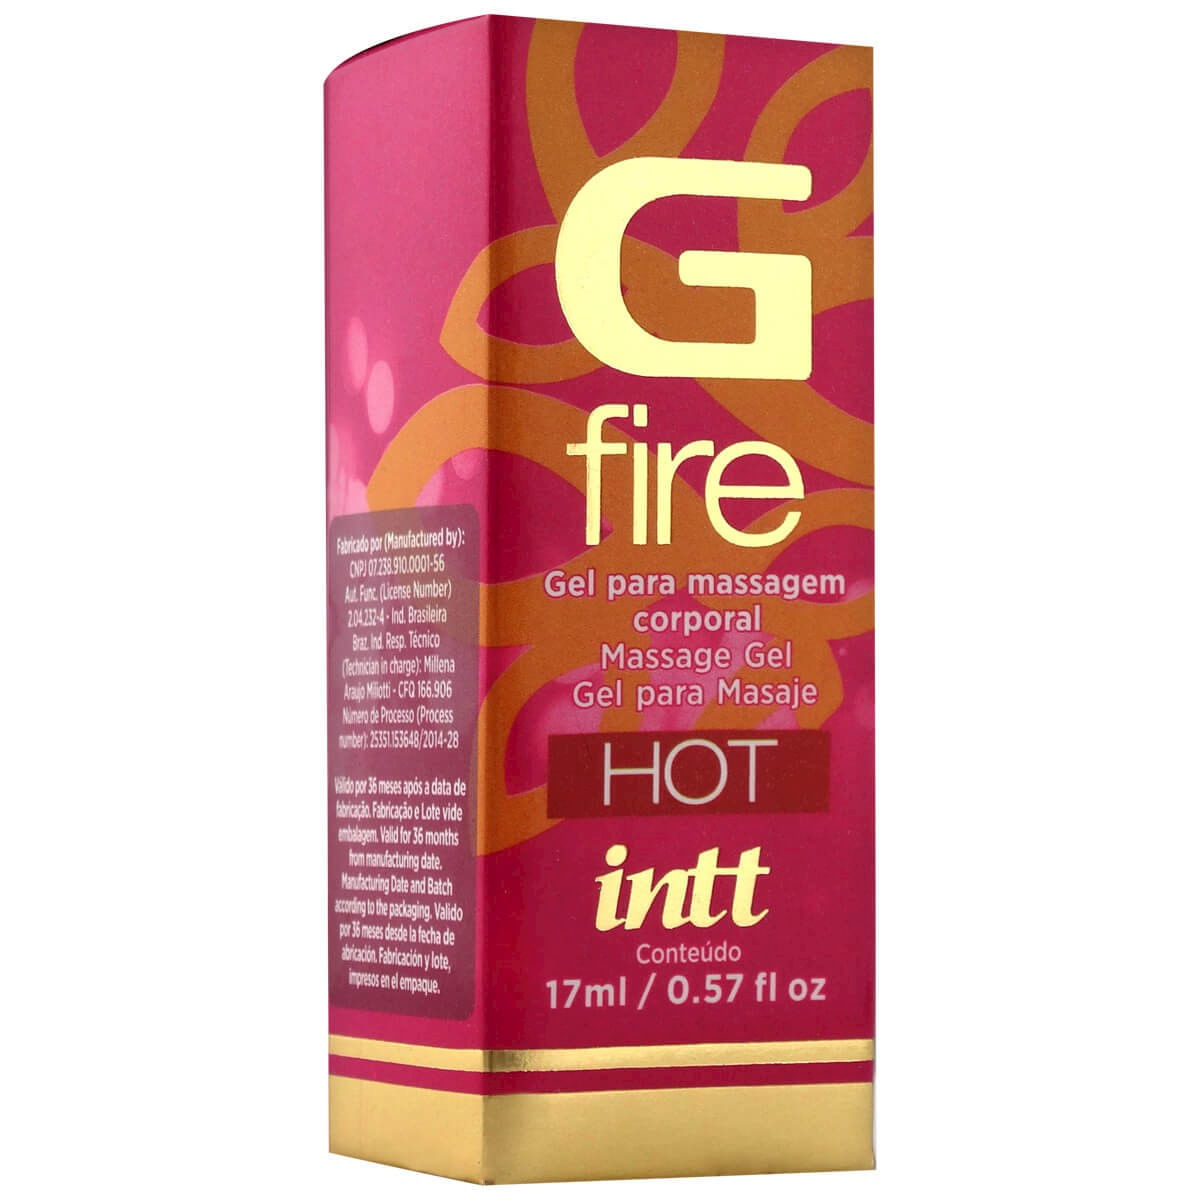 G Fire Gel para Massagem Excitante 17ml Intt